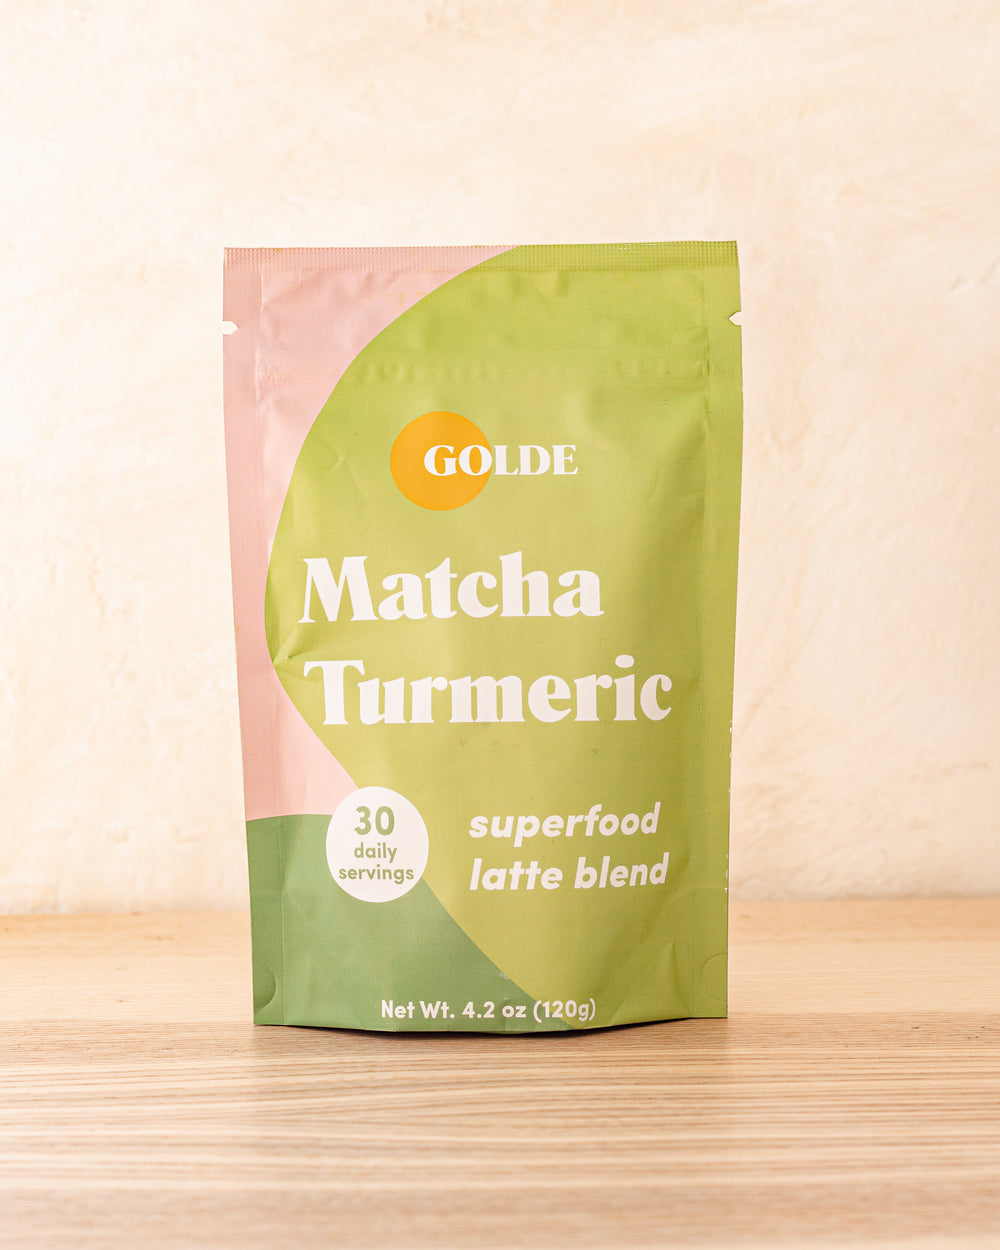 Golde Matcha Turmeric Latte Blend